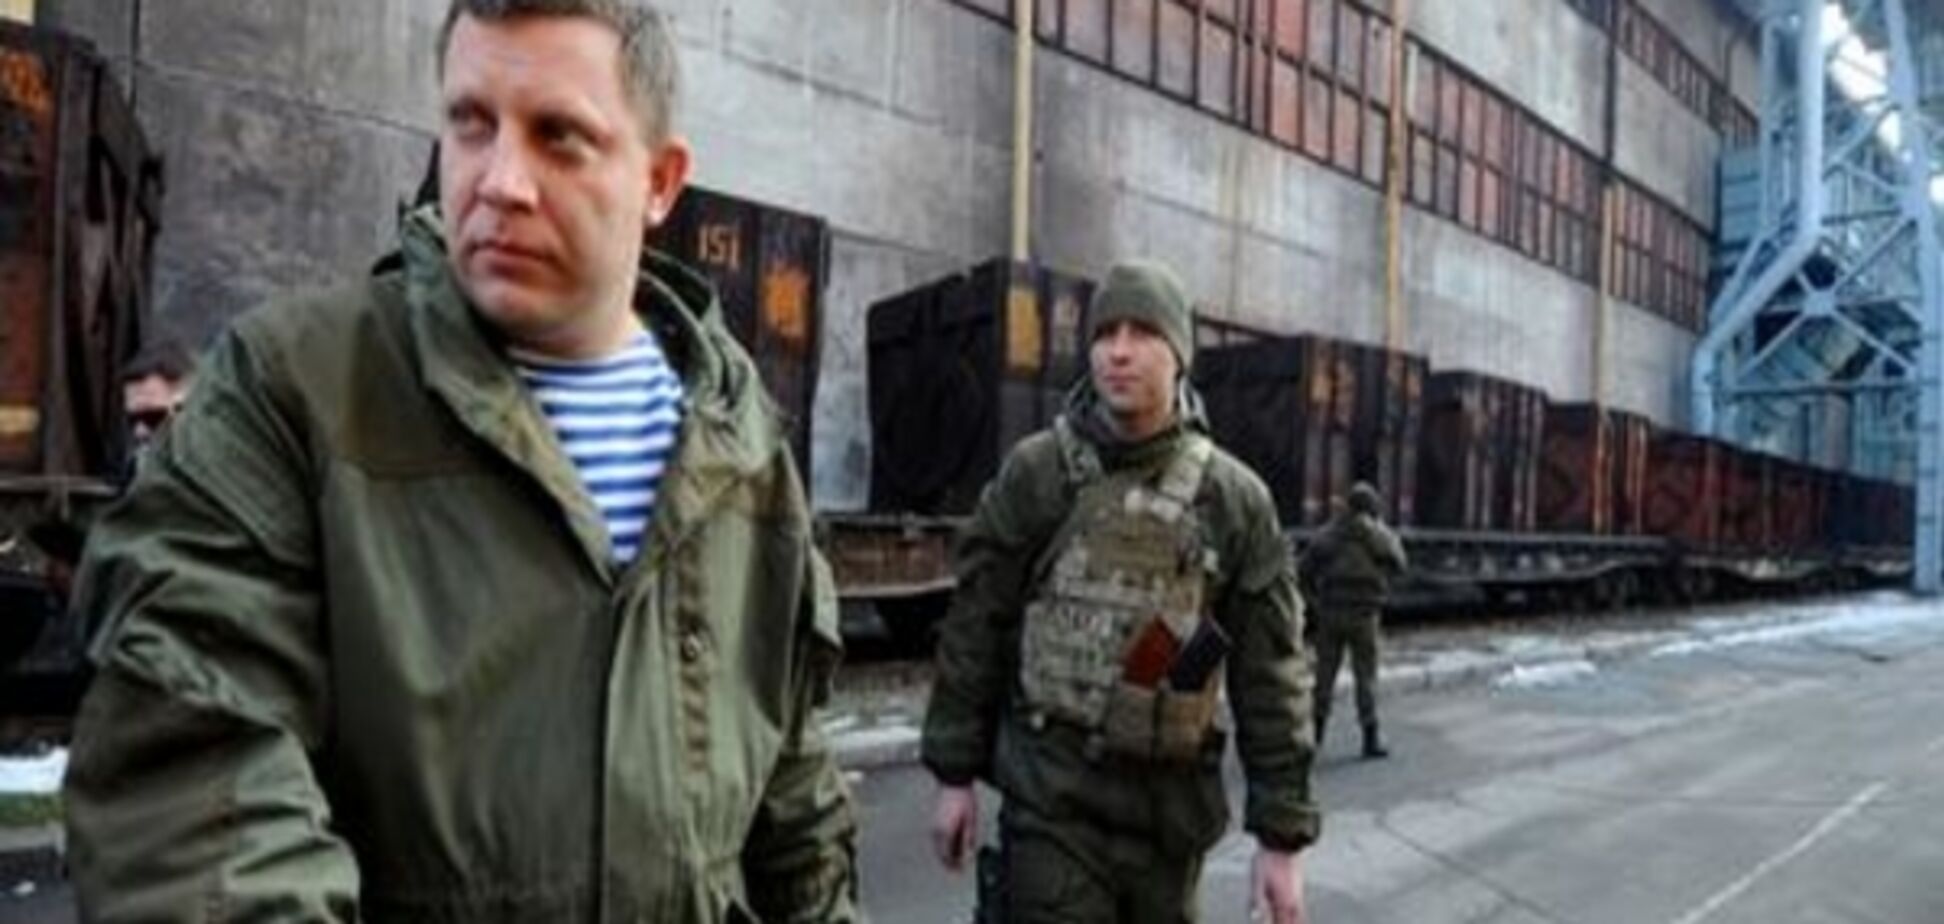 Зачем террористам 'Малороссия'? Эксперты назвали цели Захарченко